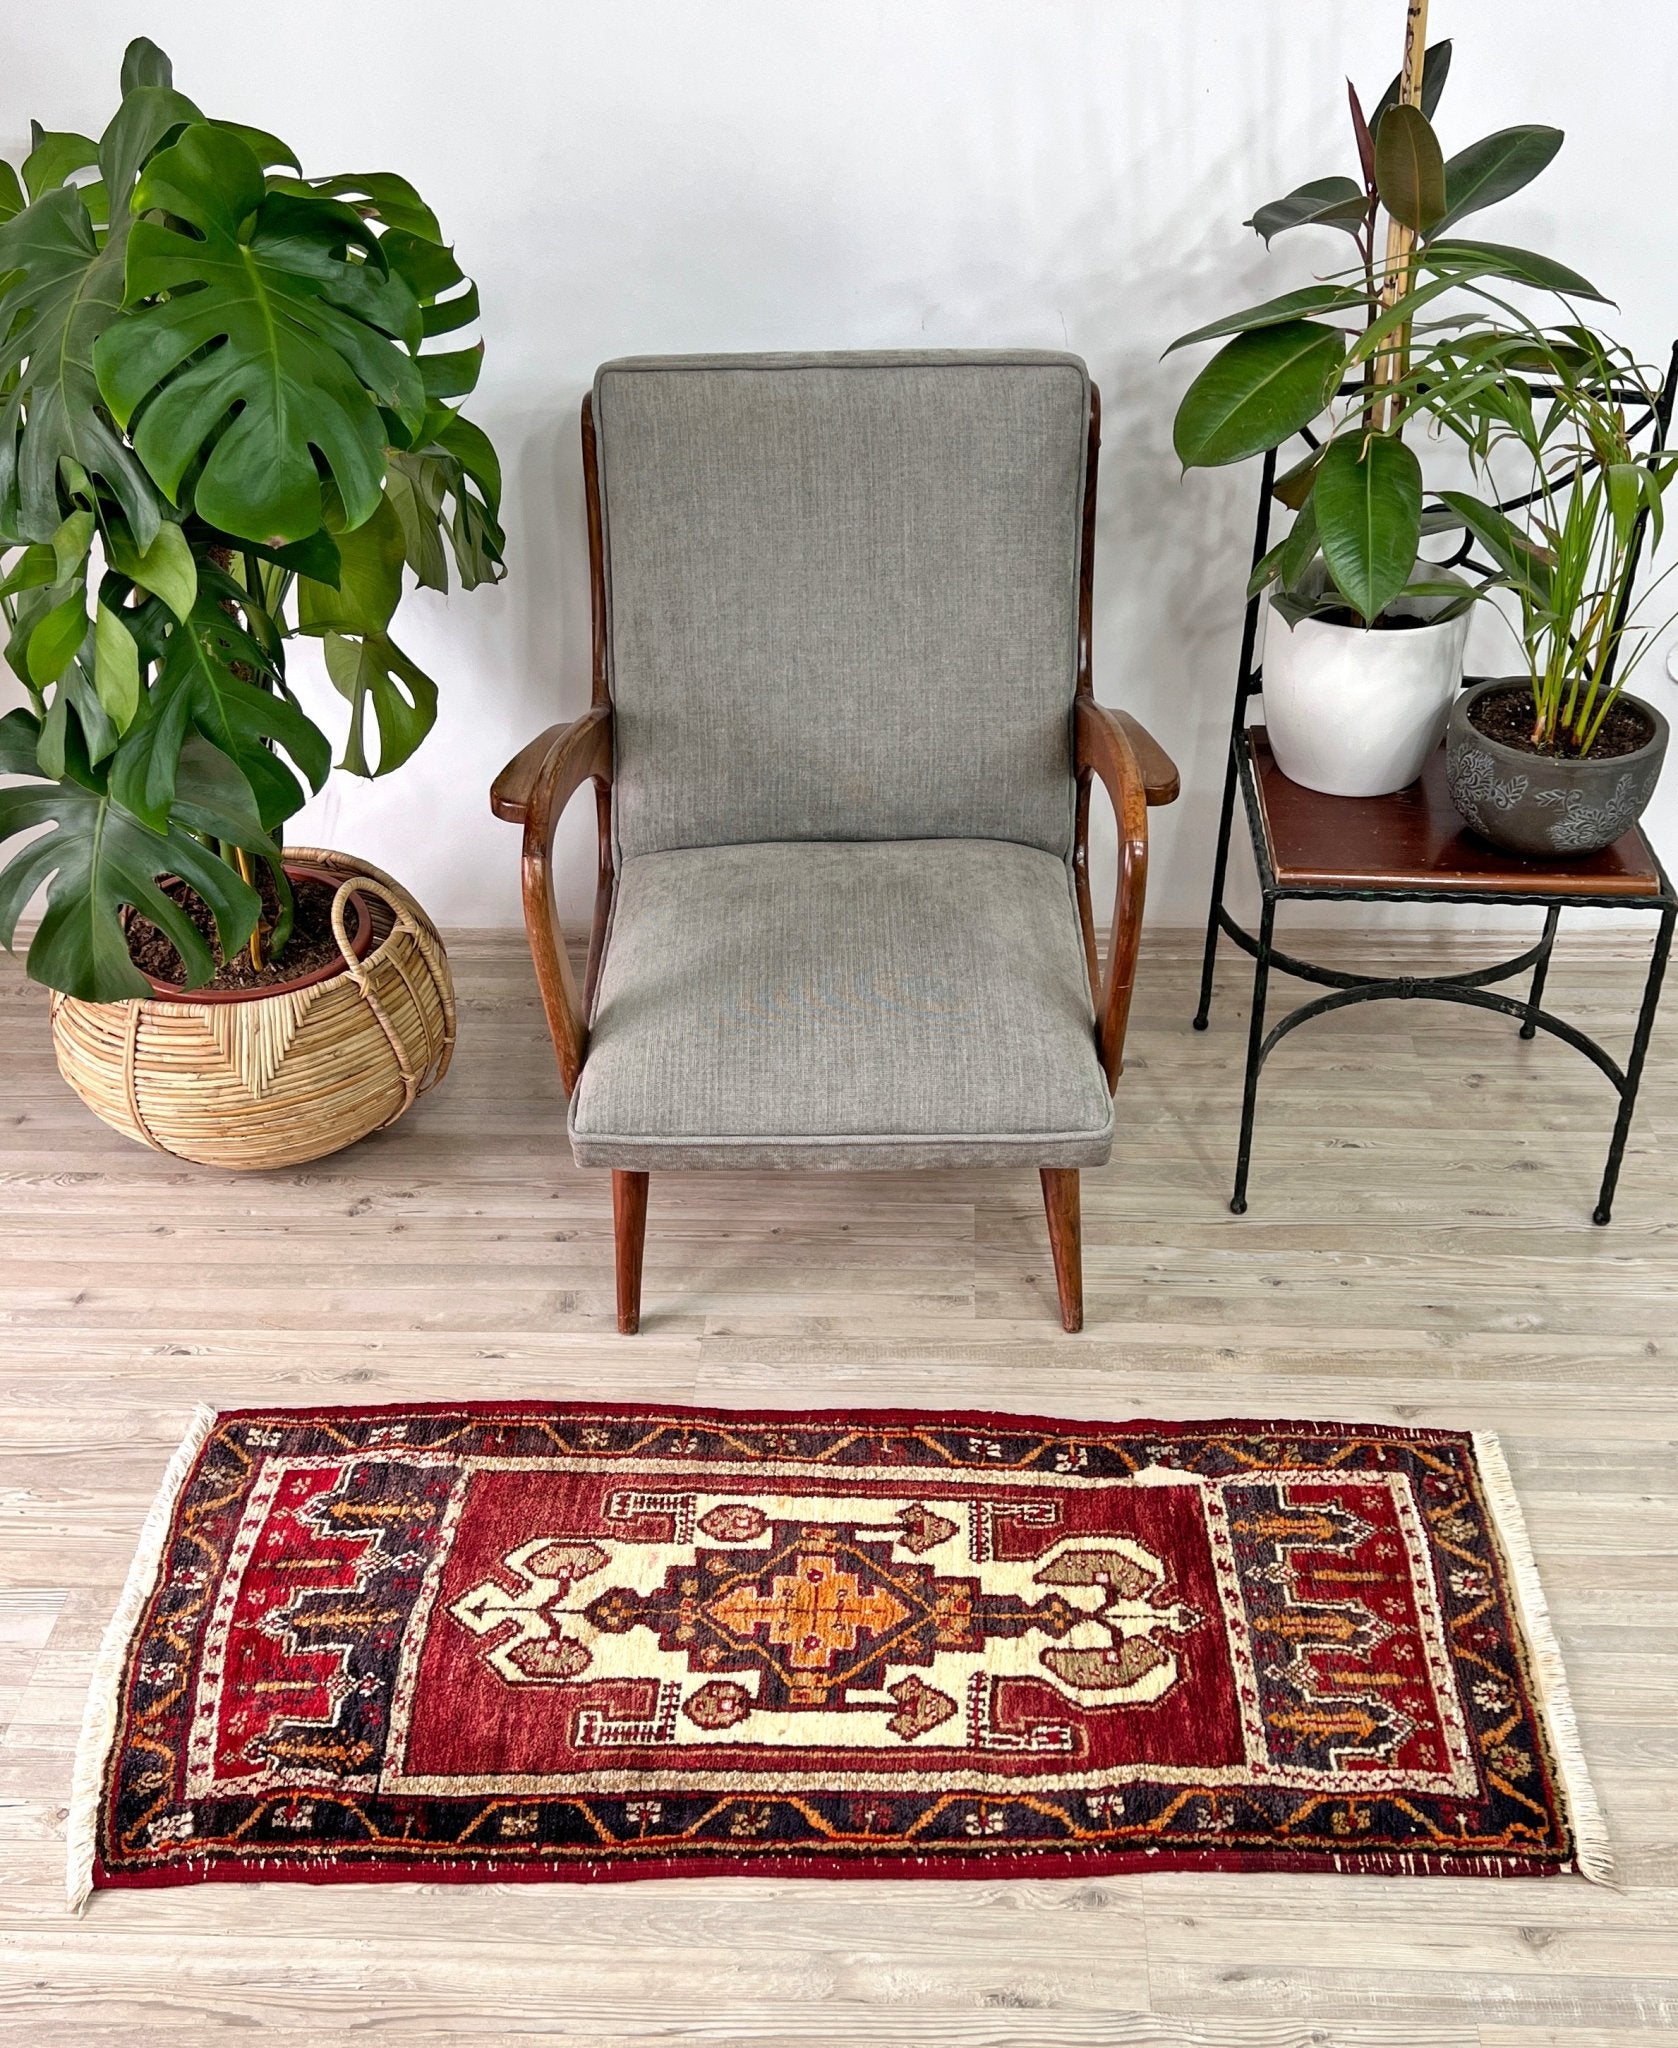 Taspinar vintage turkish mini rug shop palo alto oriental rug shop san francisco bay area berkeley